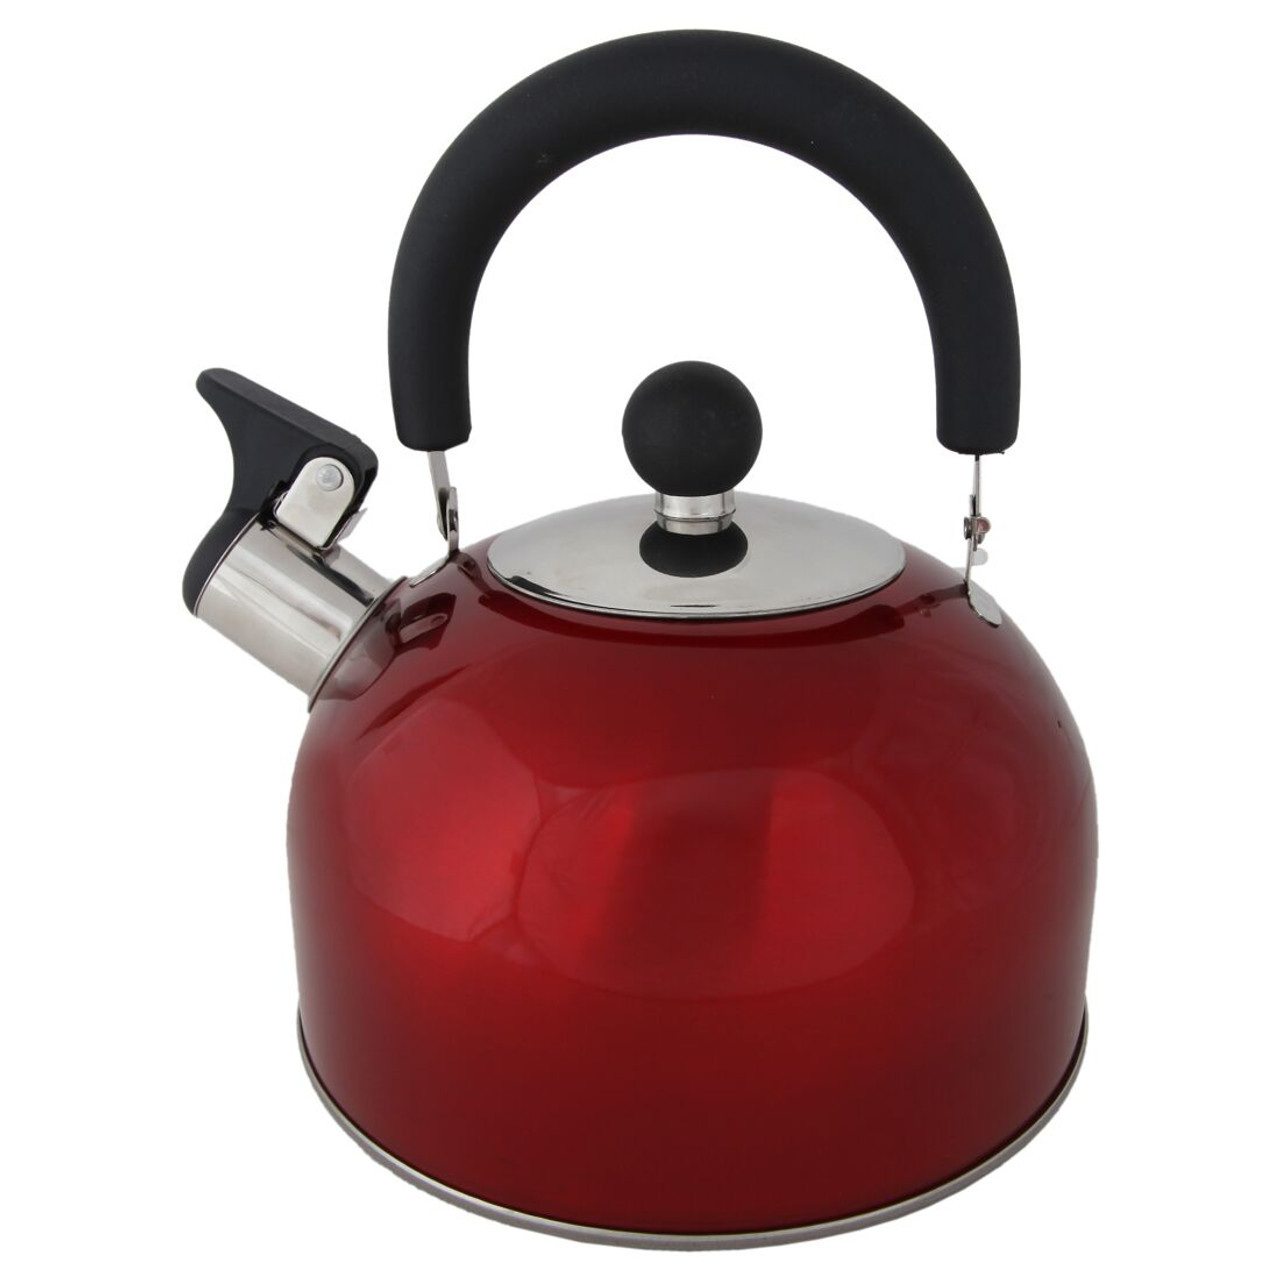 DeLonghi 1.7L Electric Kettle Red/Black KBO1401R - Best Buy